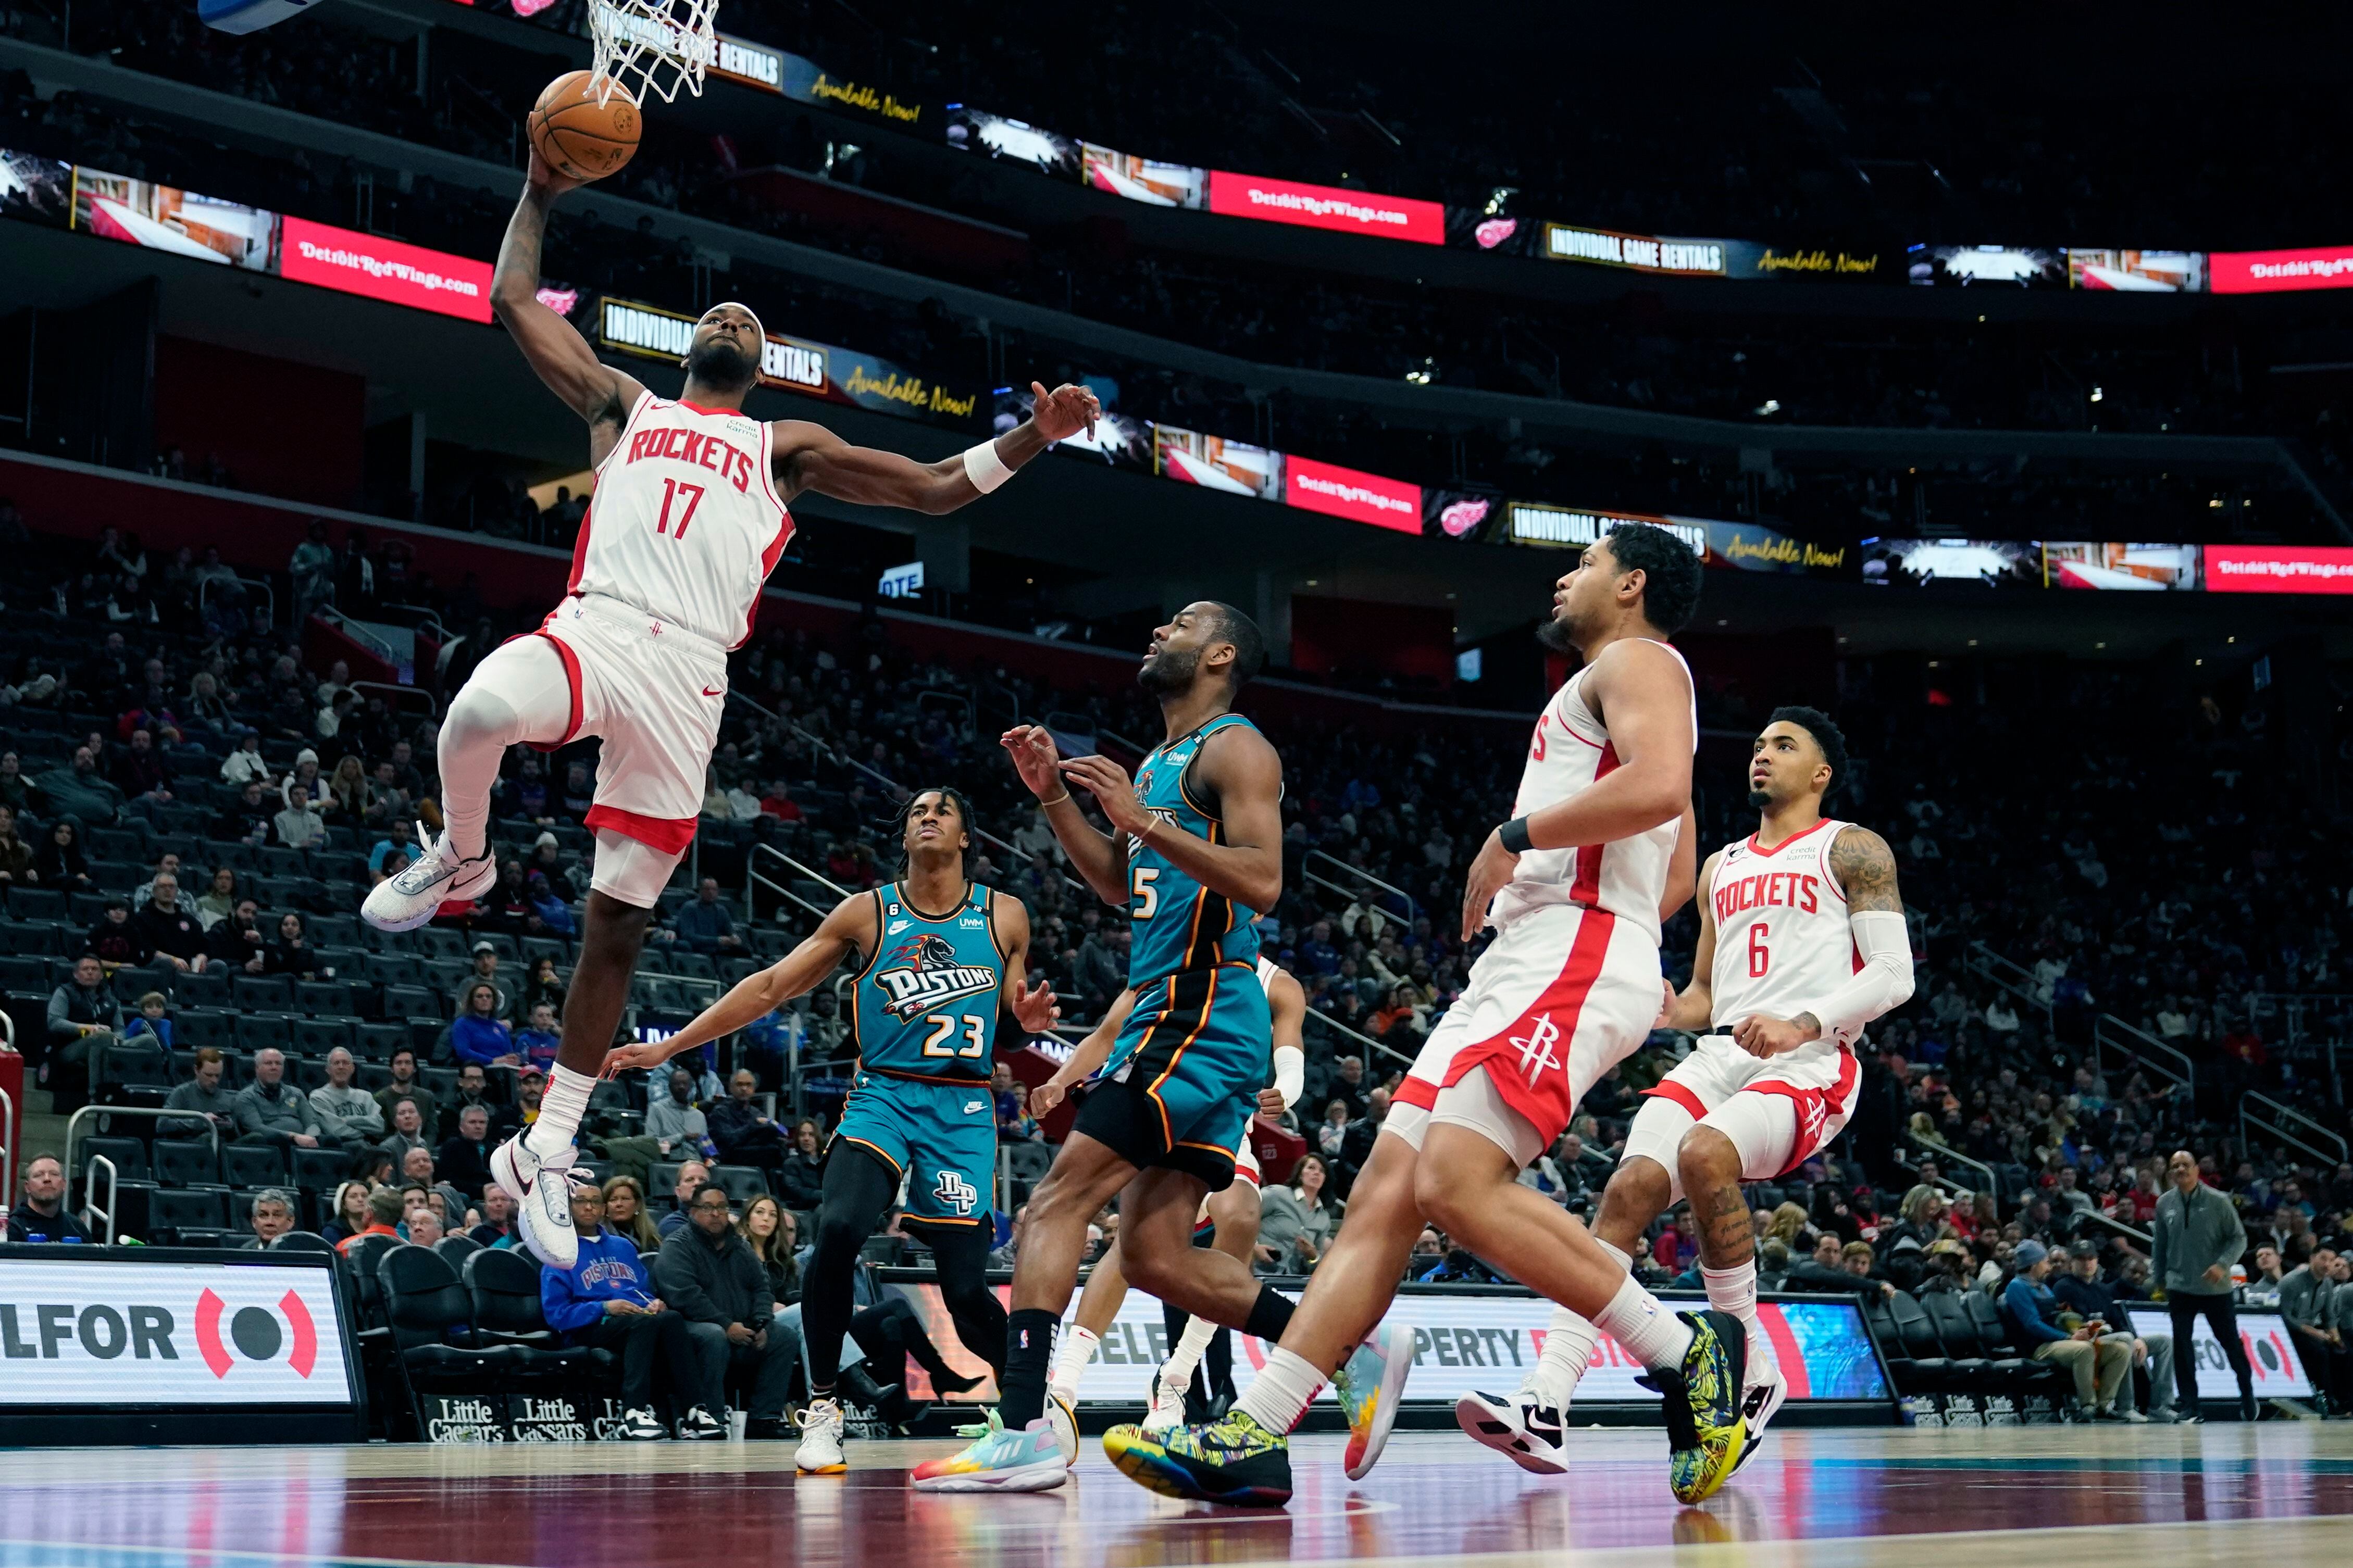 Tari Eason, alero de los Rockets de Houston, salta para realizar una volcada en el encuentro ante los Pistons de Detroit, el sábado 28 de enero de 2023 (AP Foto/Carlos Osorio)